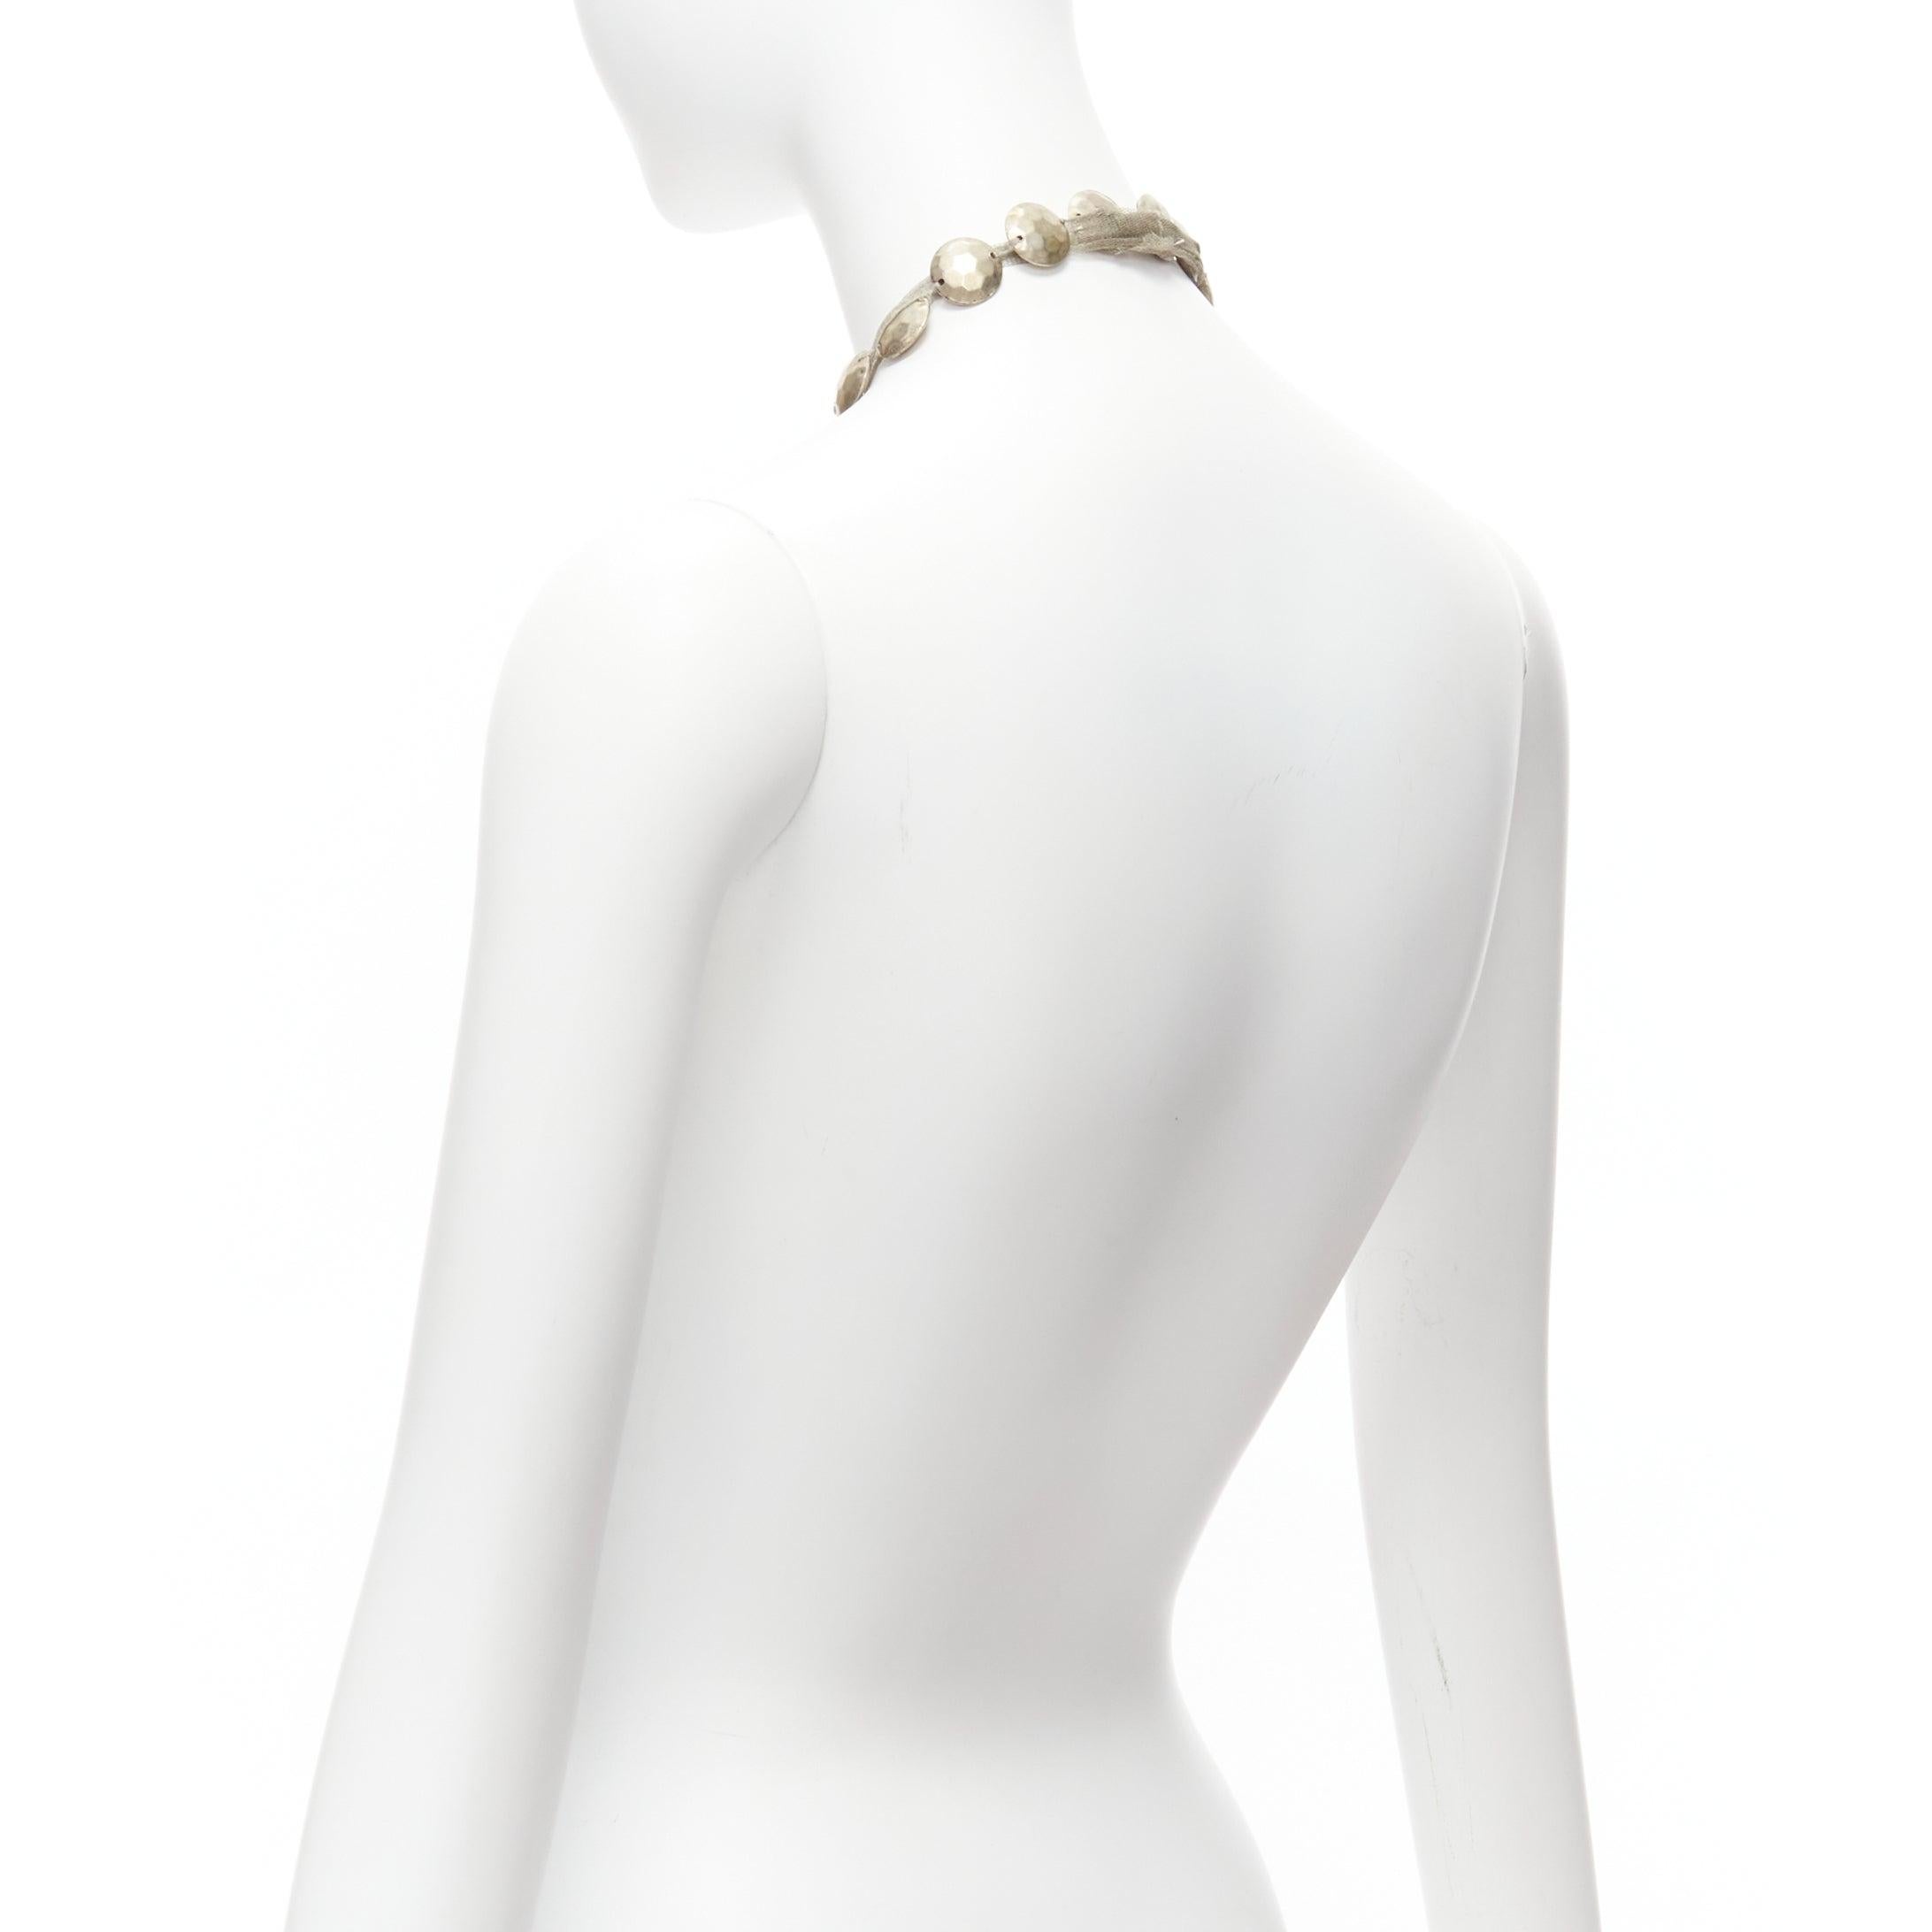 LANVIN ALBER ELBAZ gold hammered coins mesh ribbon embellished long necklace For Sale 1